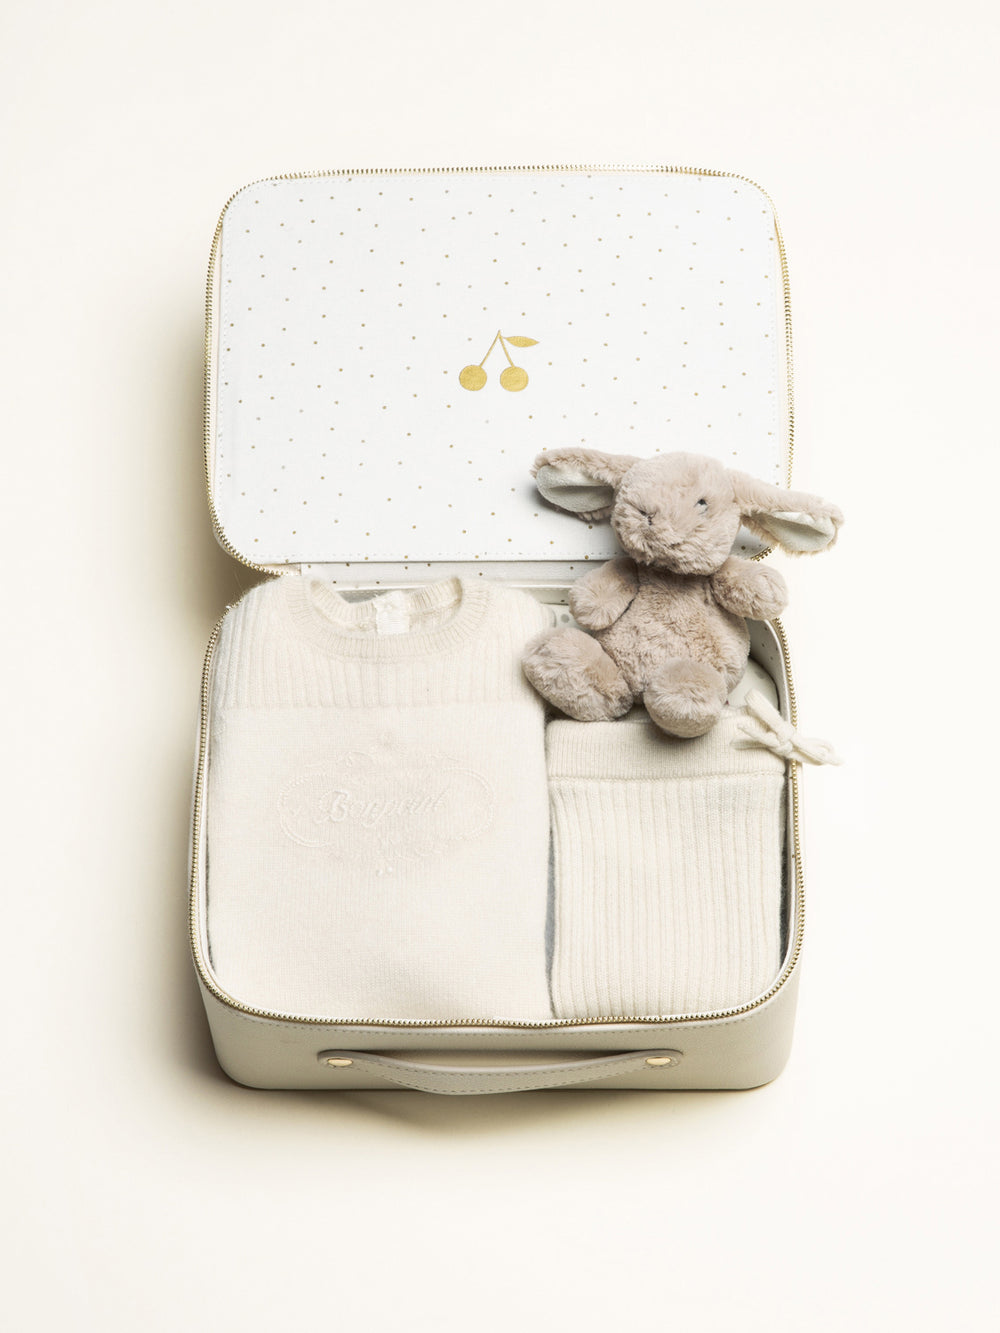 Medium unisex birth suitcase